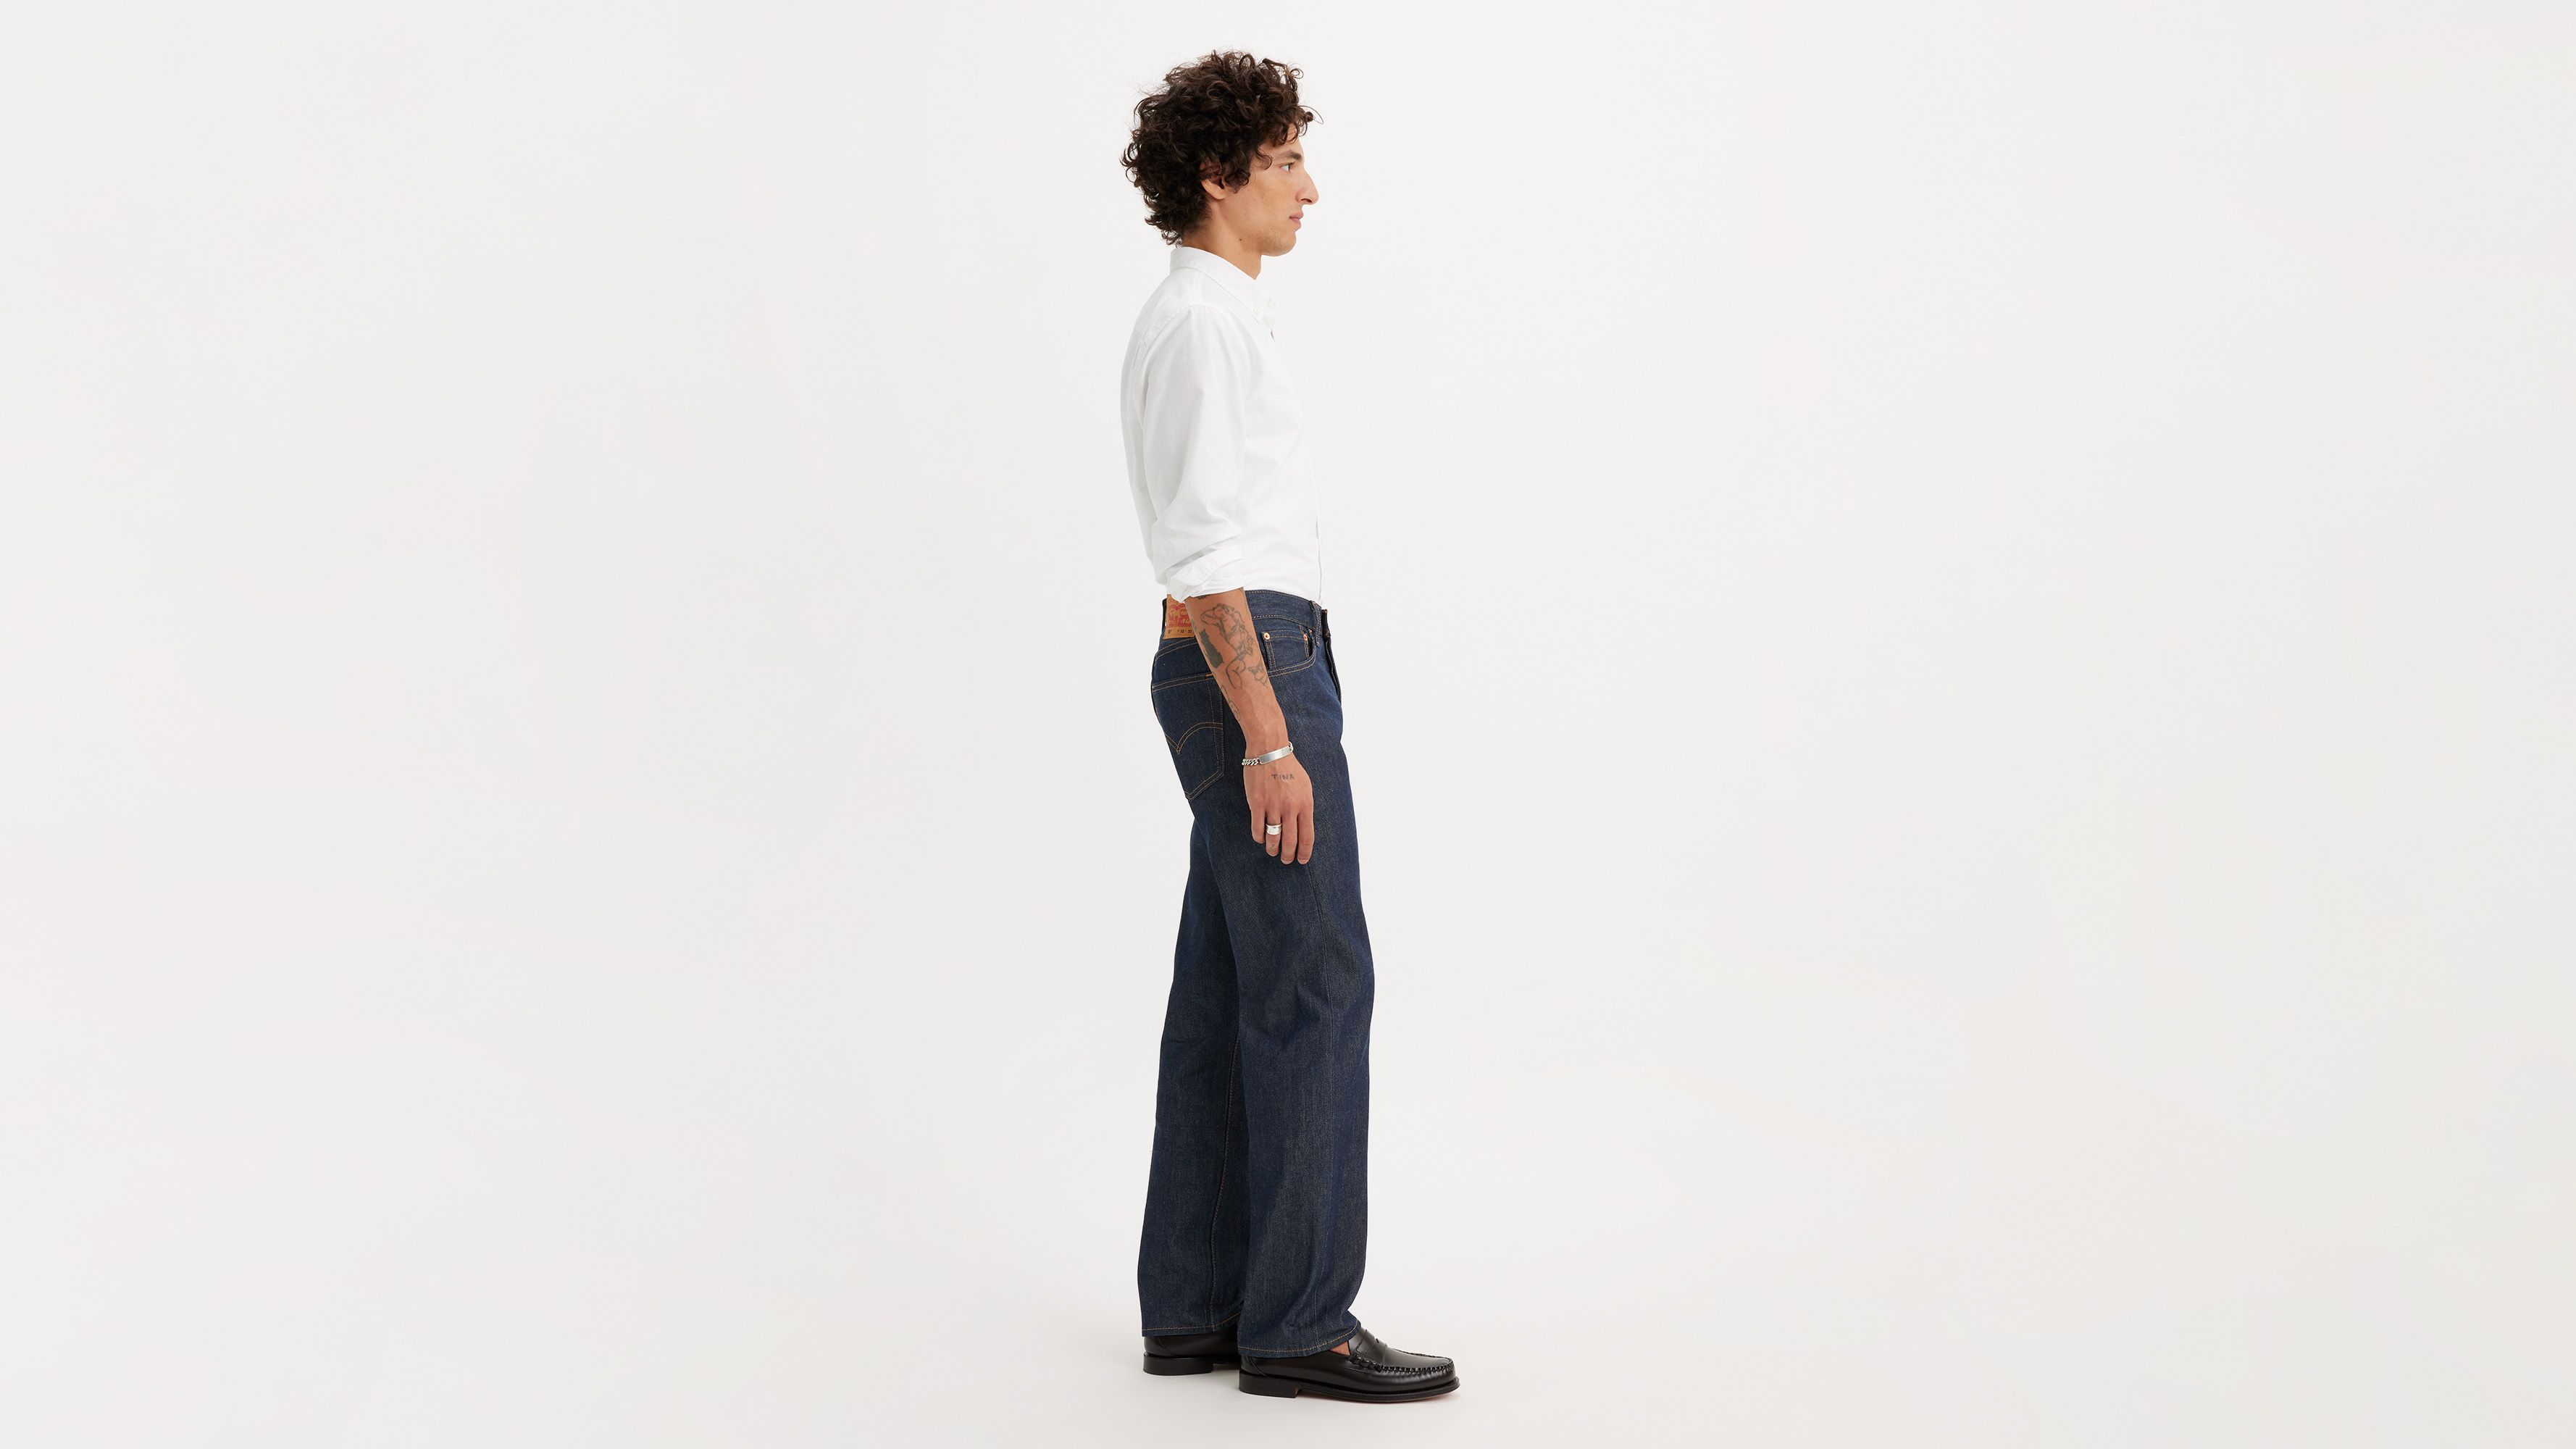 501® Original Shrink-to-fit™ Men's Jeans - Dark Wash | Levi's® US